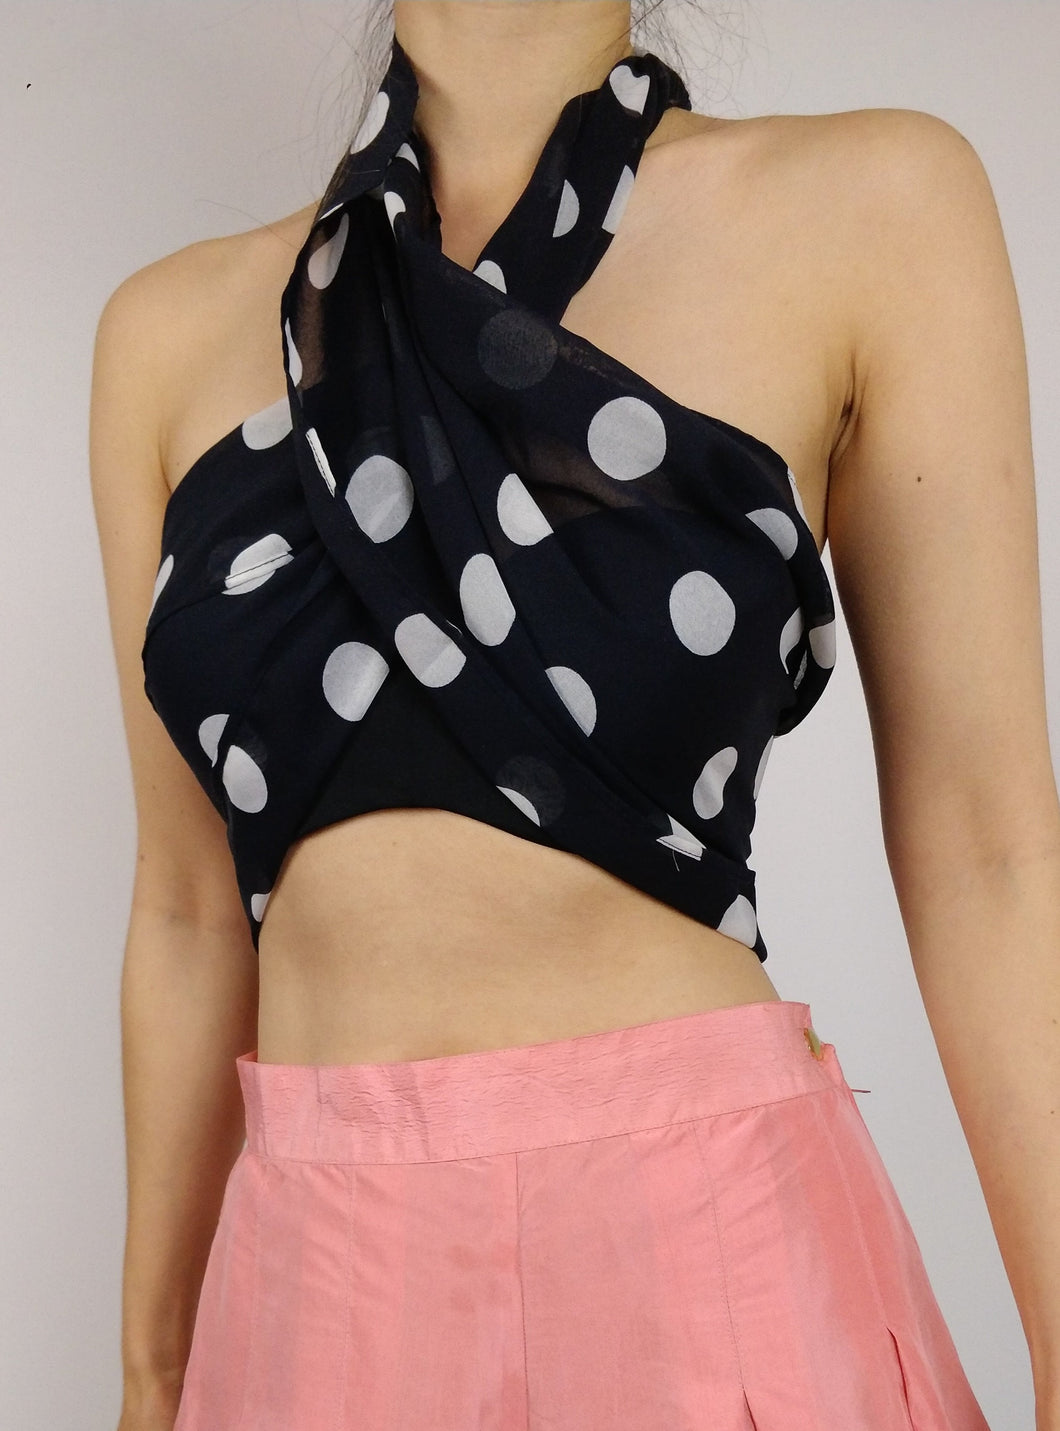 Der schwarze Polka-Schal | Vintage schwarzer, durchsichtiger, weißer, gepunkteter, langer, leichter Schal